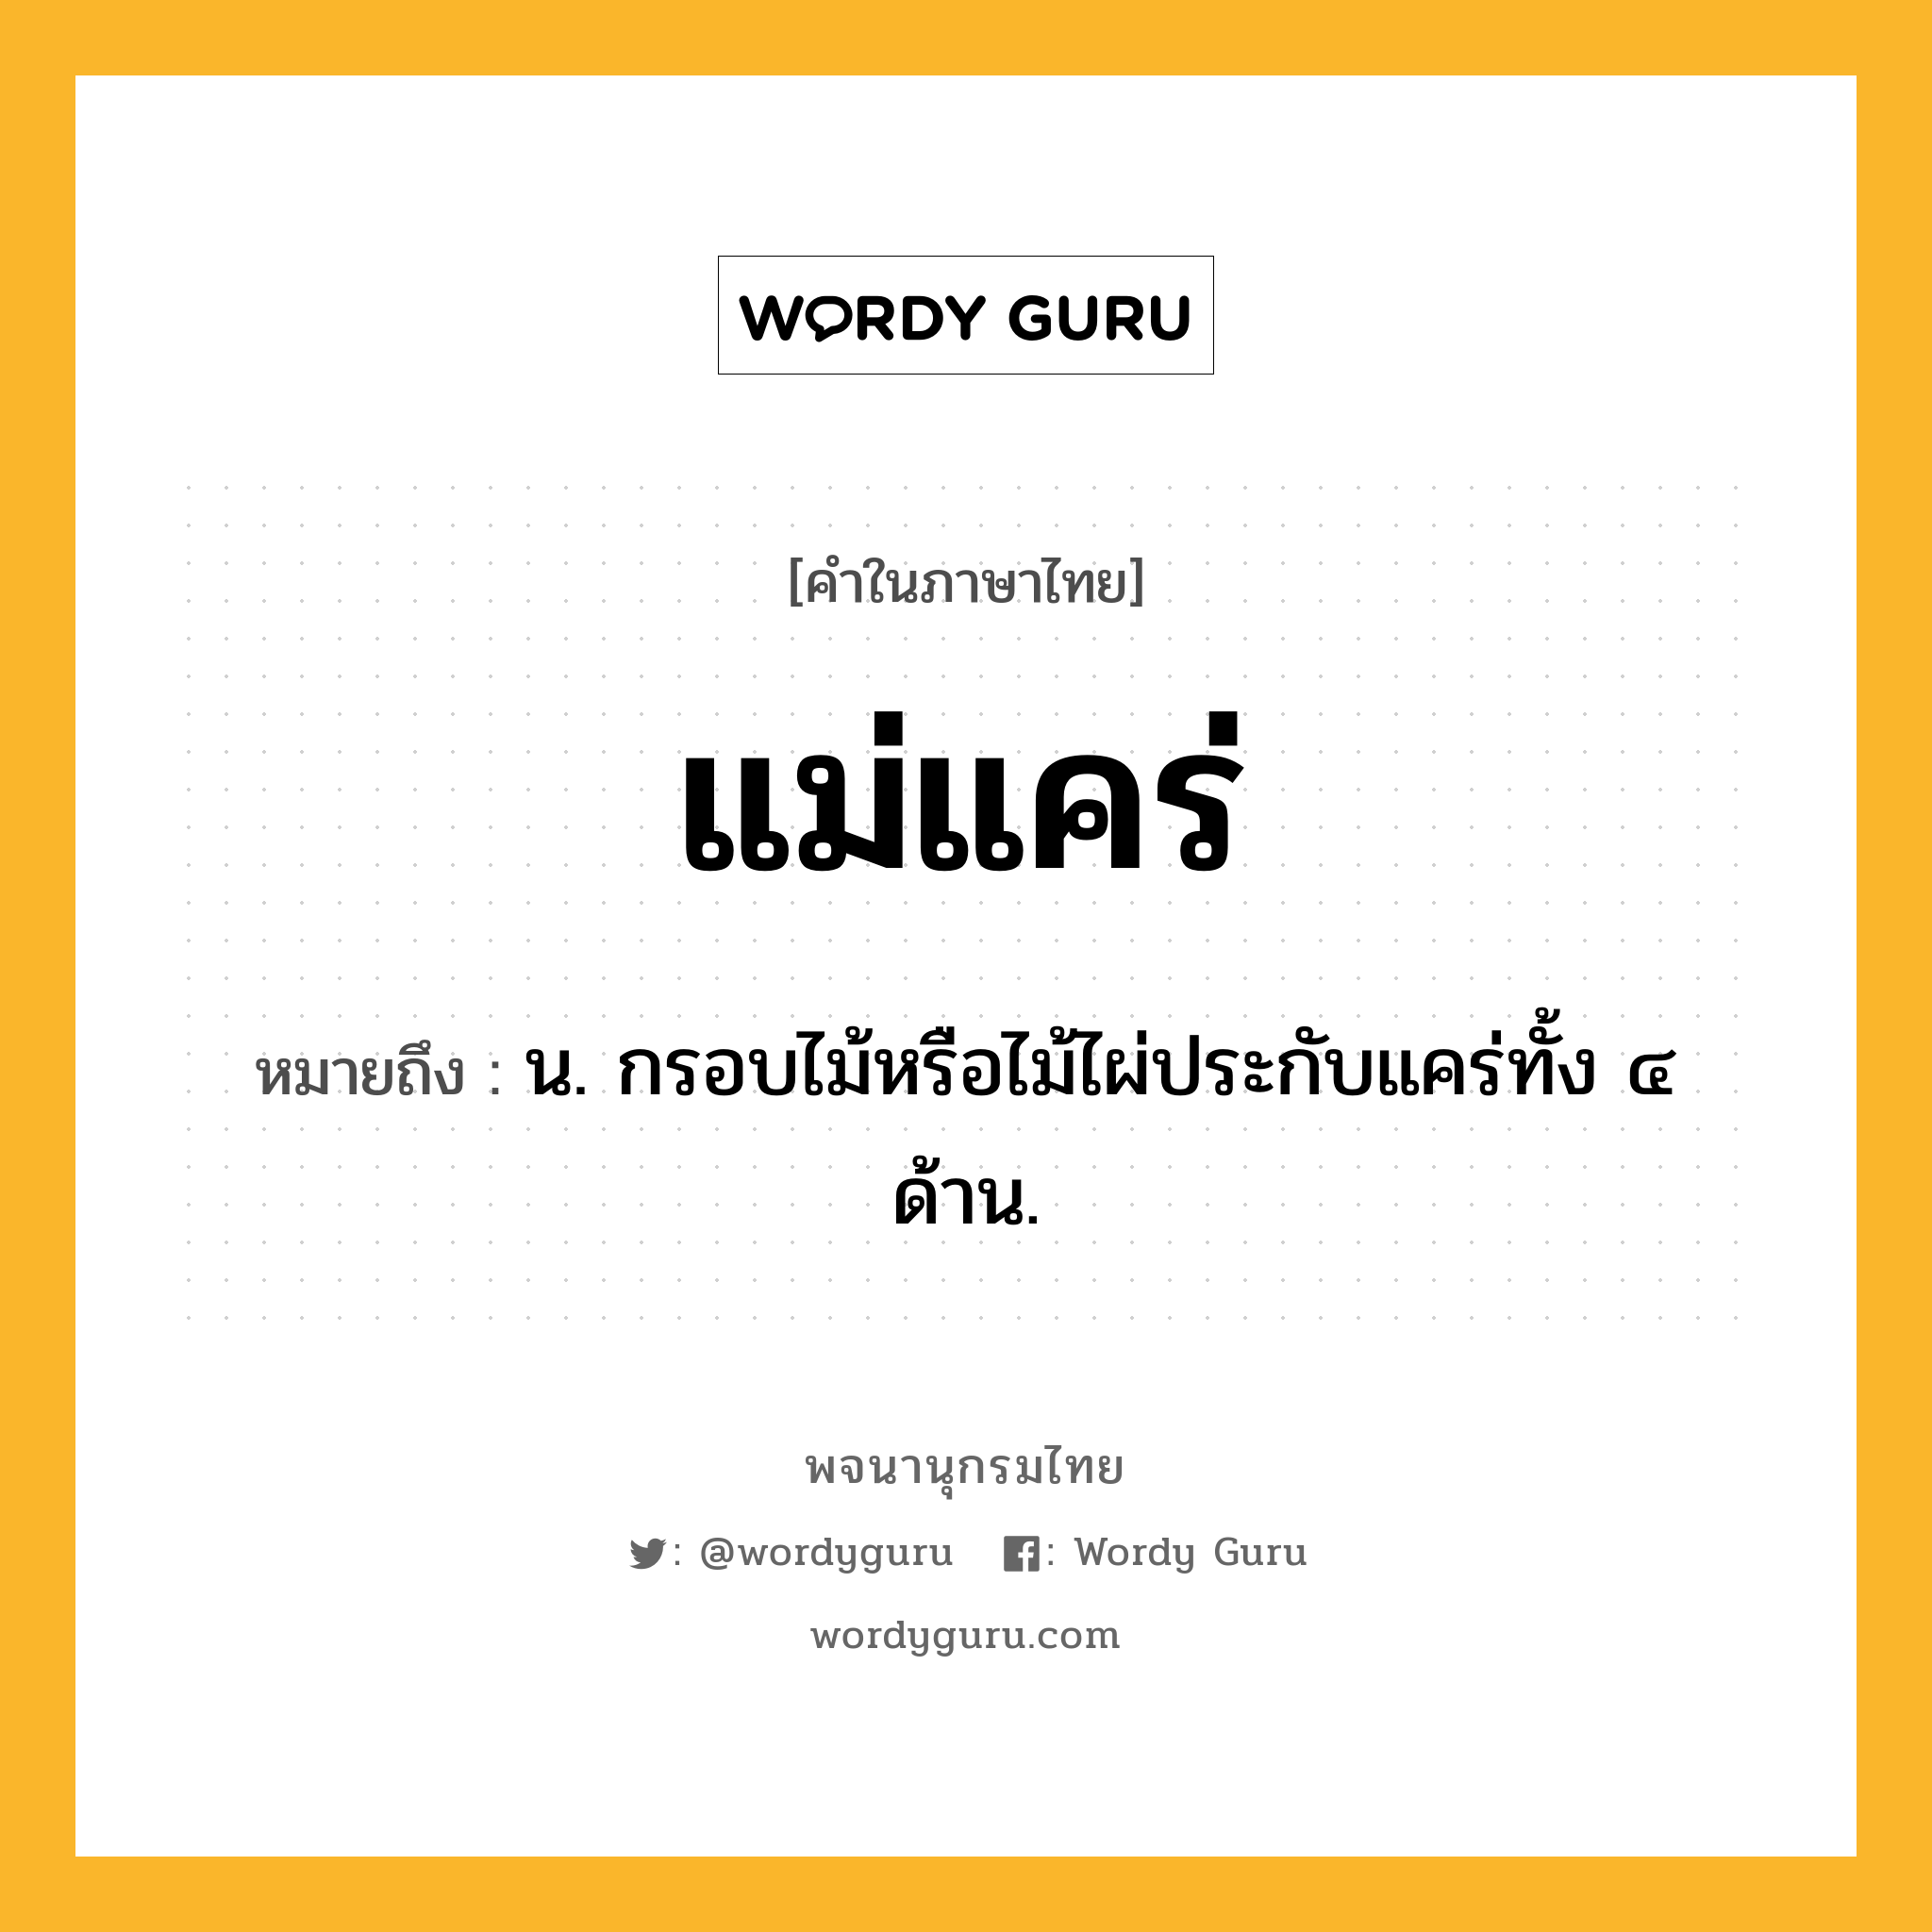 แม่แคร่ หมายถึงอะไร?, คำในภาษาไทย แม่แคร่ หมายถึง น. กรอบไม้หรือไม้ไผ่ประกับแคร่ทั้ง ๔ ด้าน.